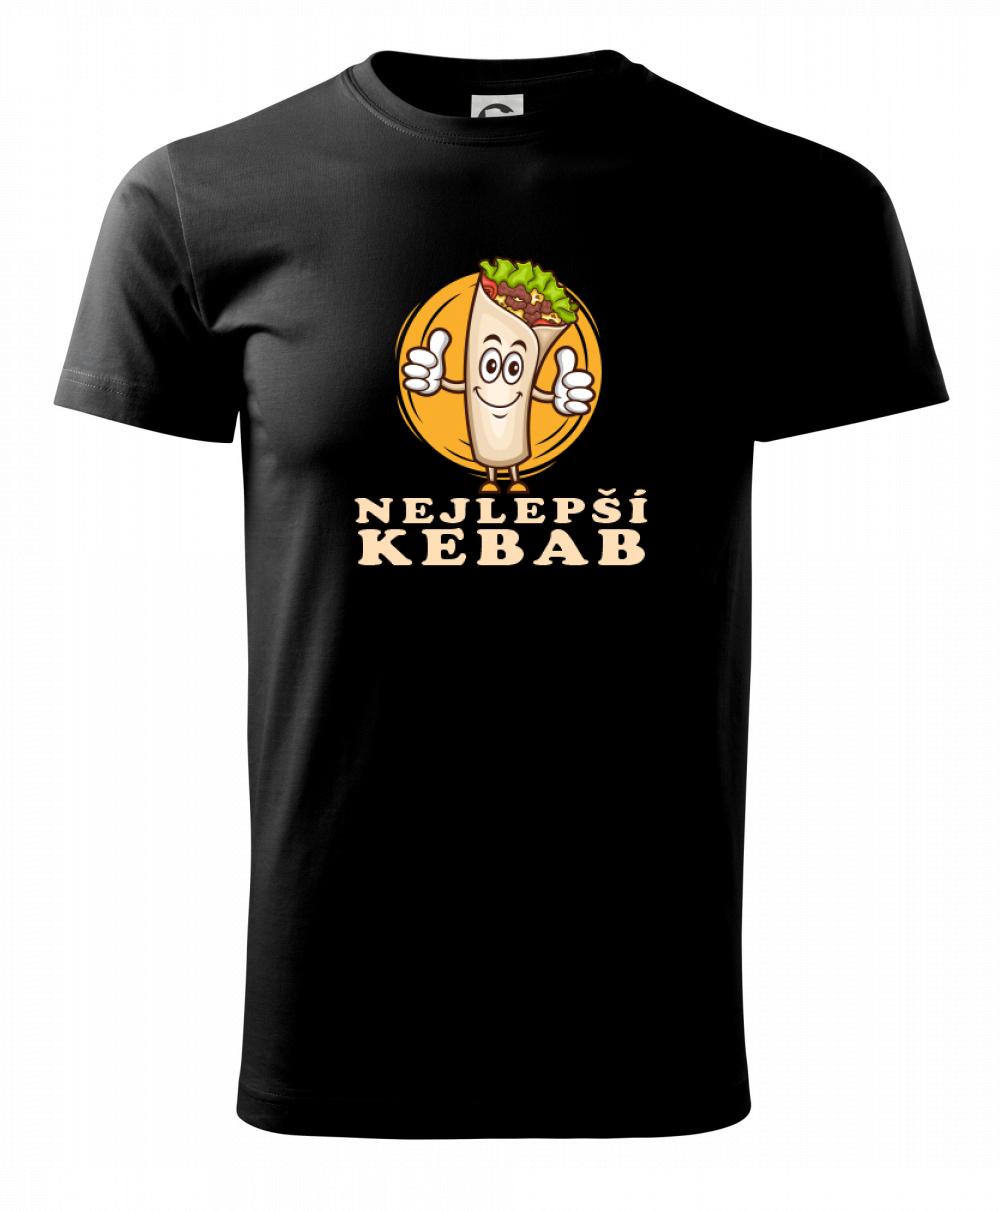 Nejlepší kebab - Heavy new - triko pánské